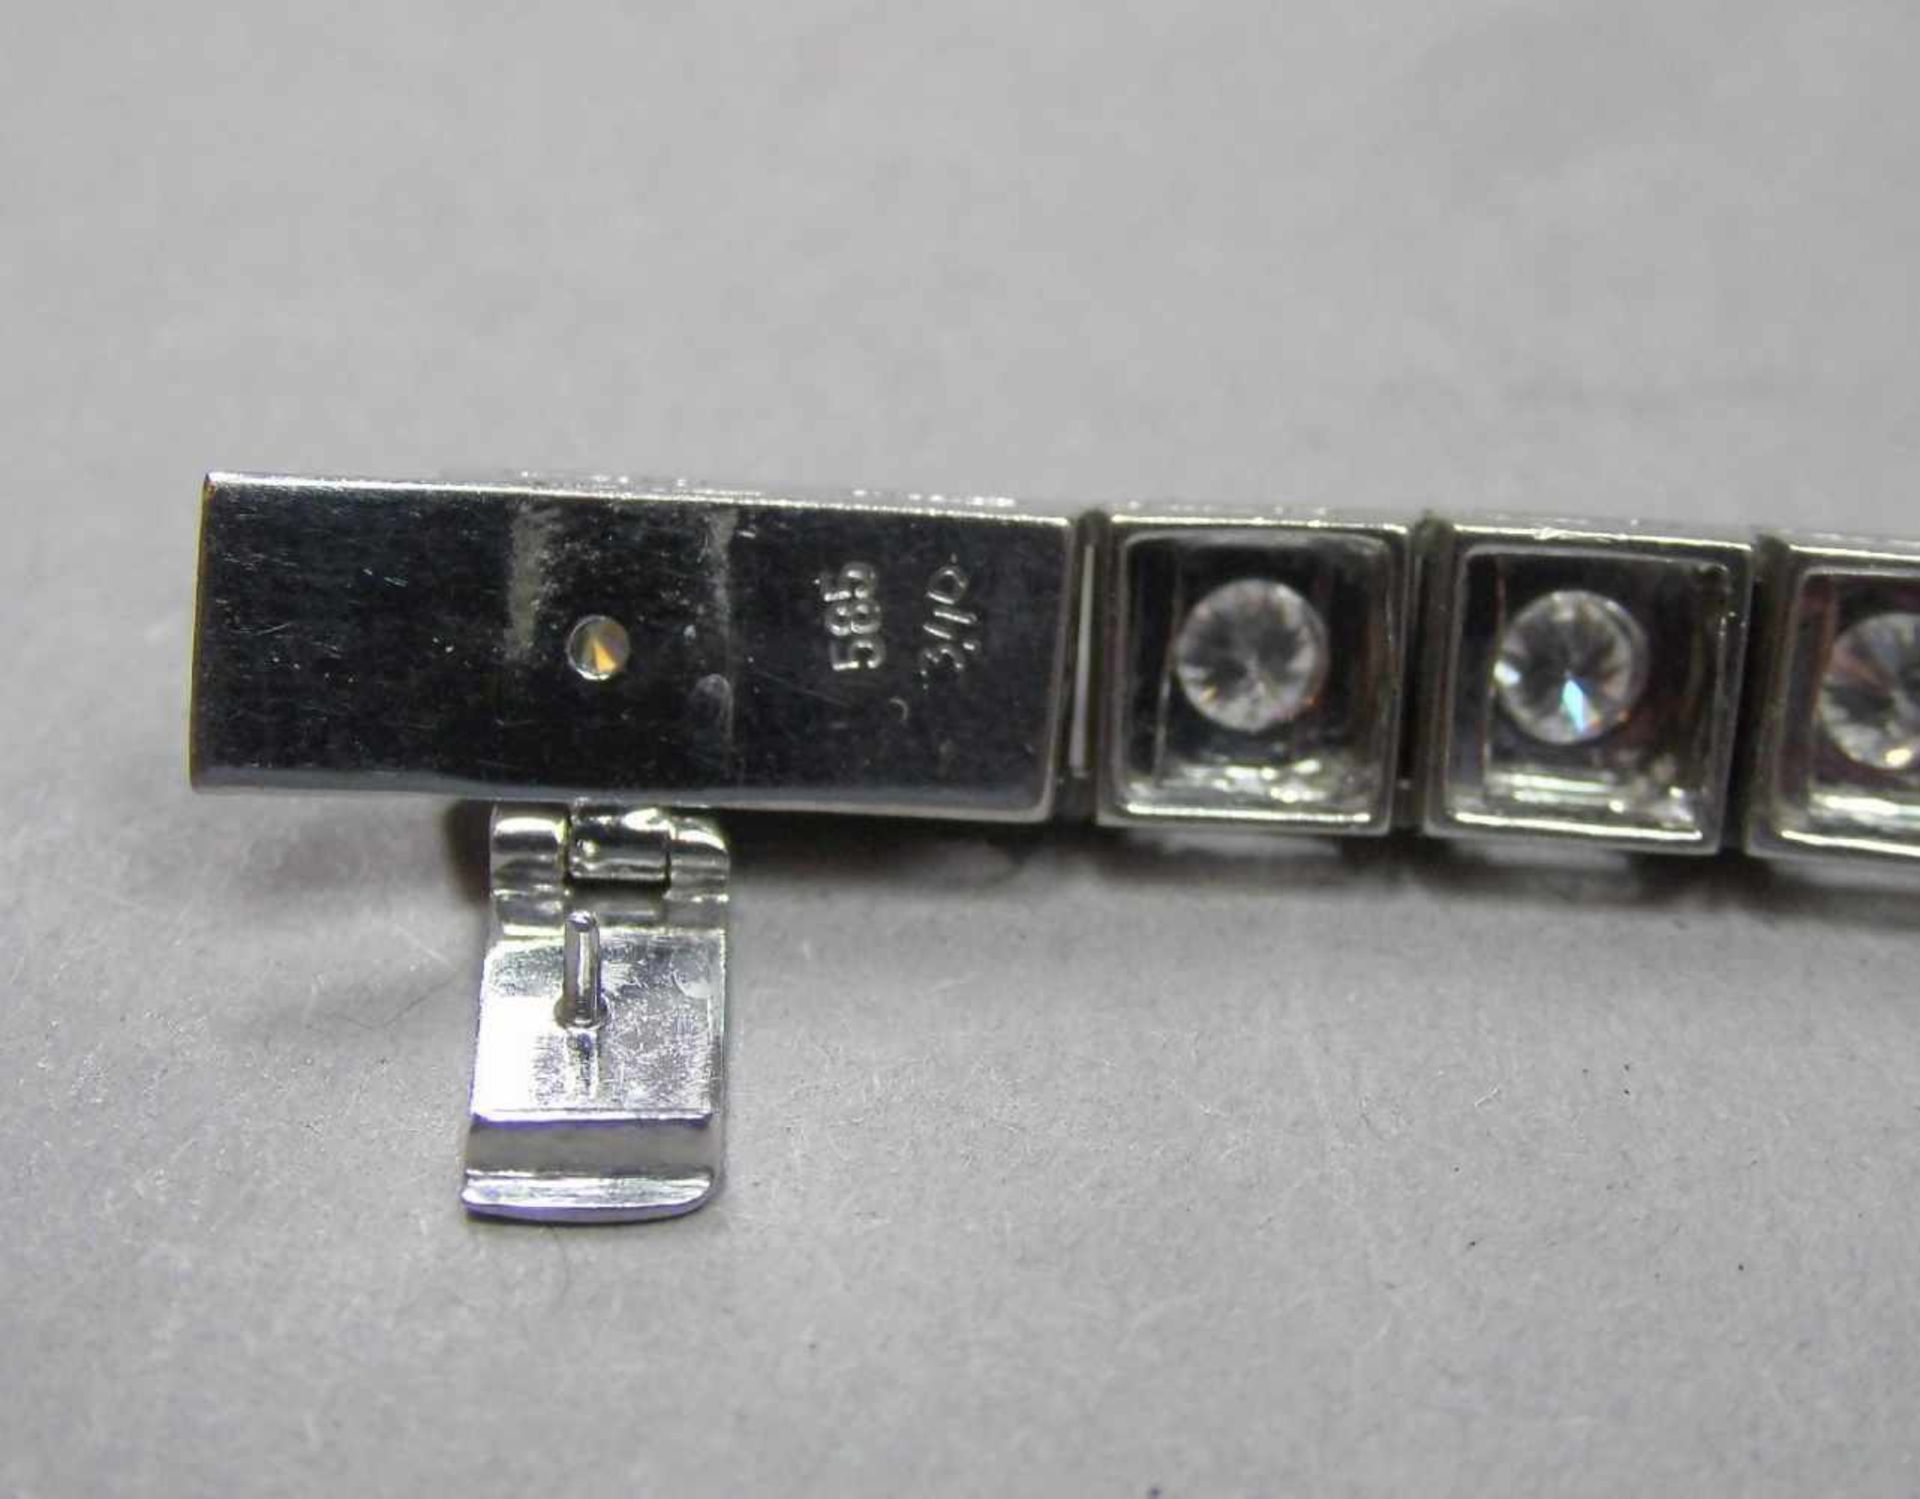 ARMBAND / bracelet, 585er Weissgold (20,6 g), besetzt mit insgesamt 31 Brillanten von je 0,1 ct. - Bild 3 aus 3